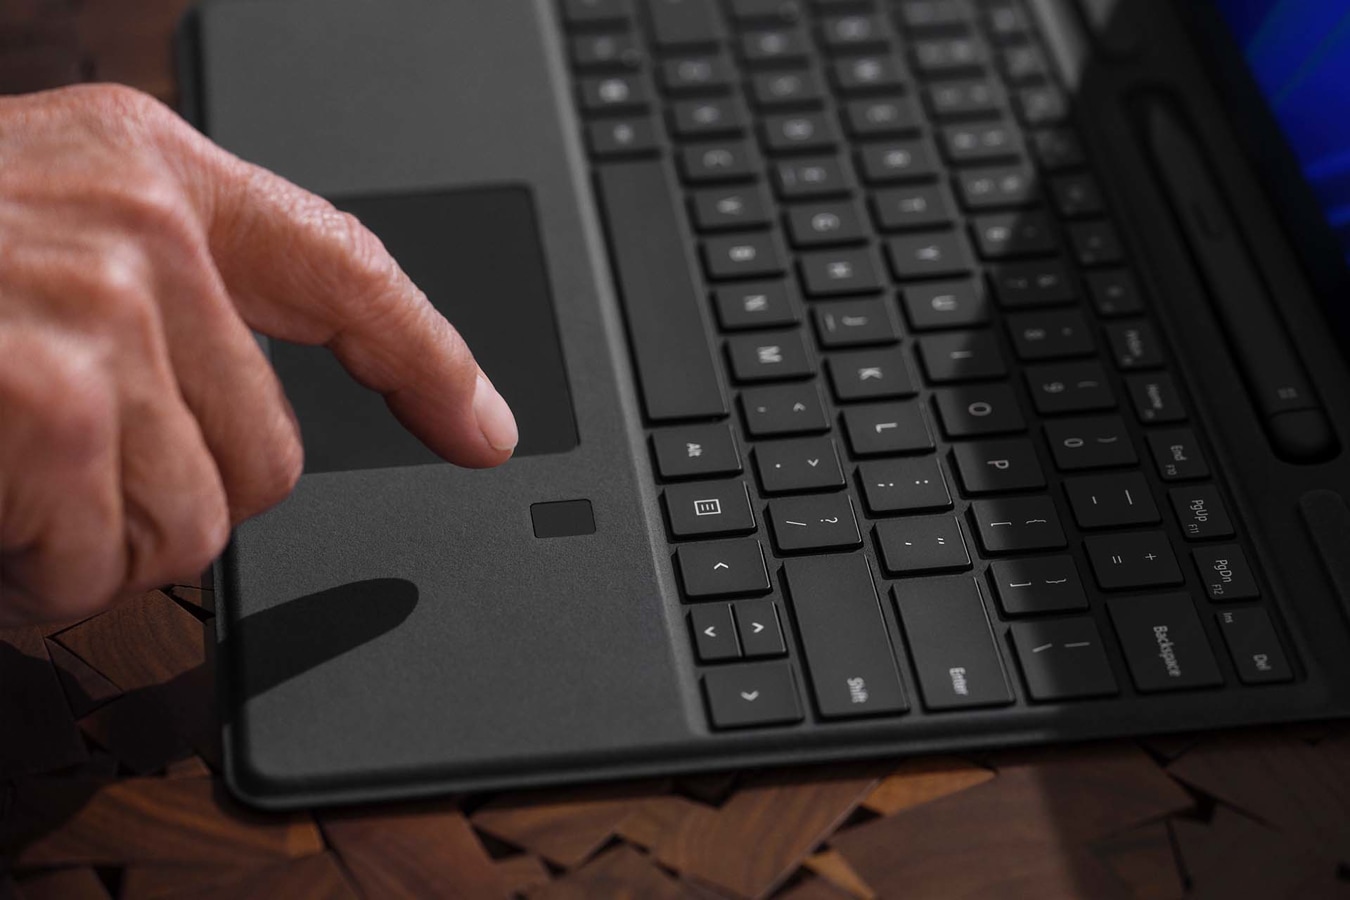 Le doigt d’une personne passe sur la fonction d’identification biométrique du Clavier Surface Pro Signature